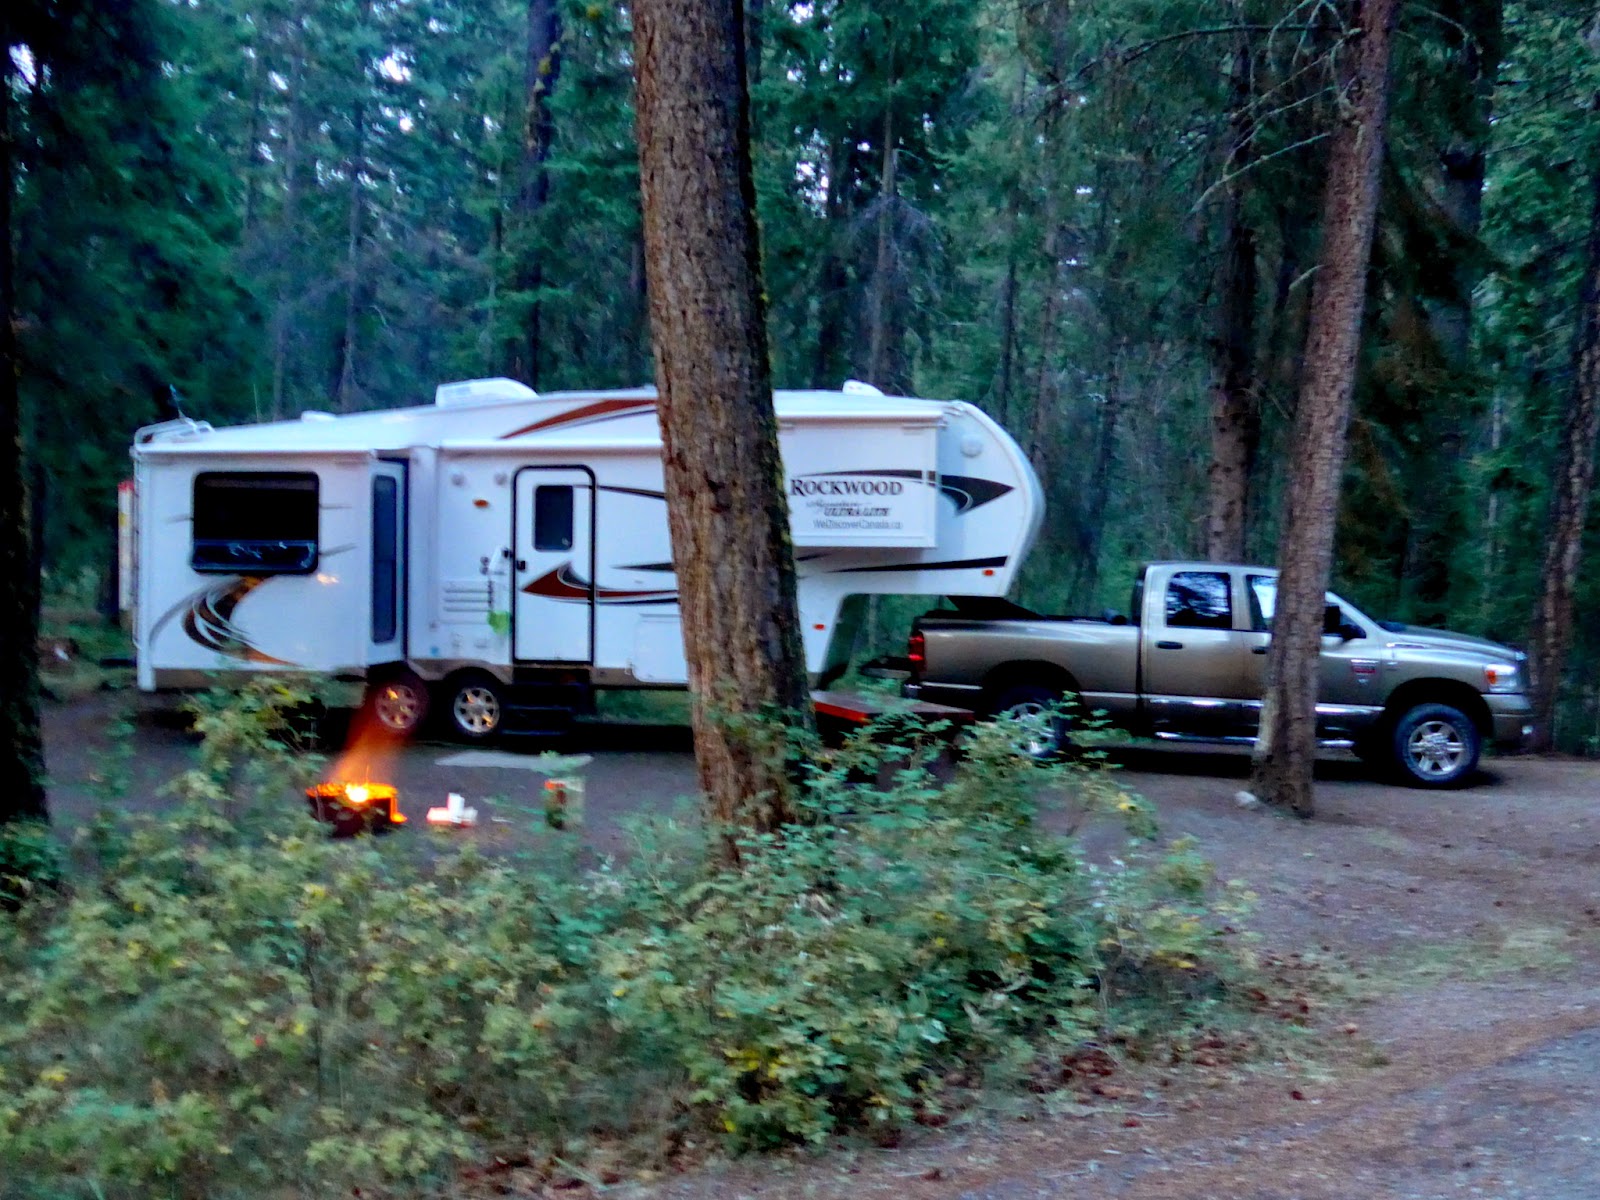 Camp set up at Lac La Hache Provinical Park. Wonderful.